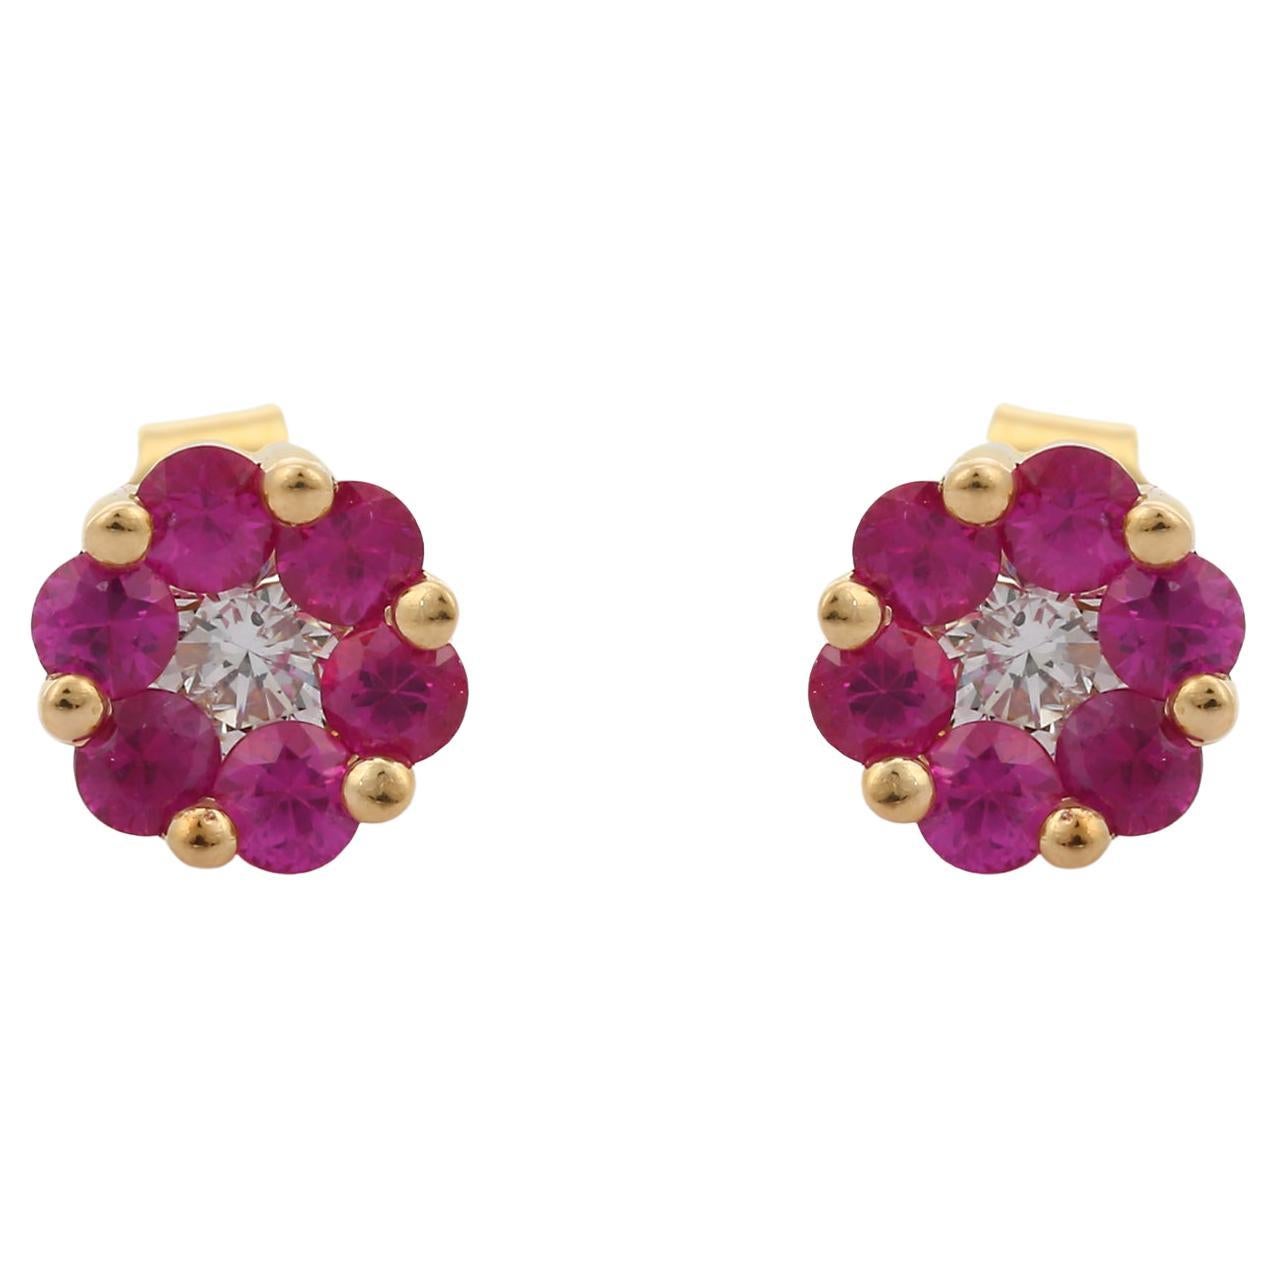 Minimalist Ruby Diamond Flower Stud Earrings Set in 18K Yellow Gold Settings 